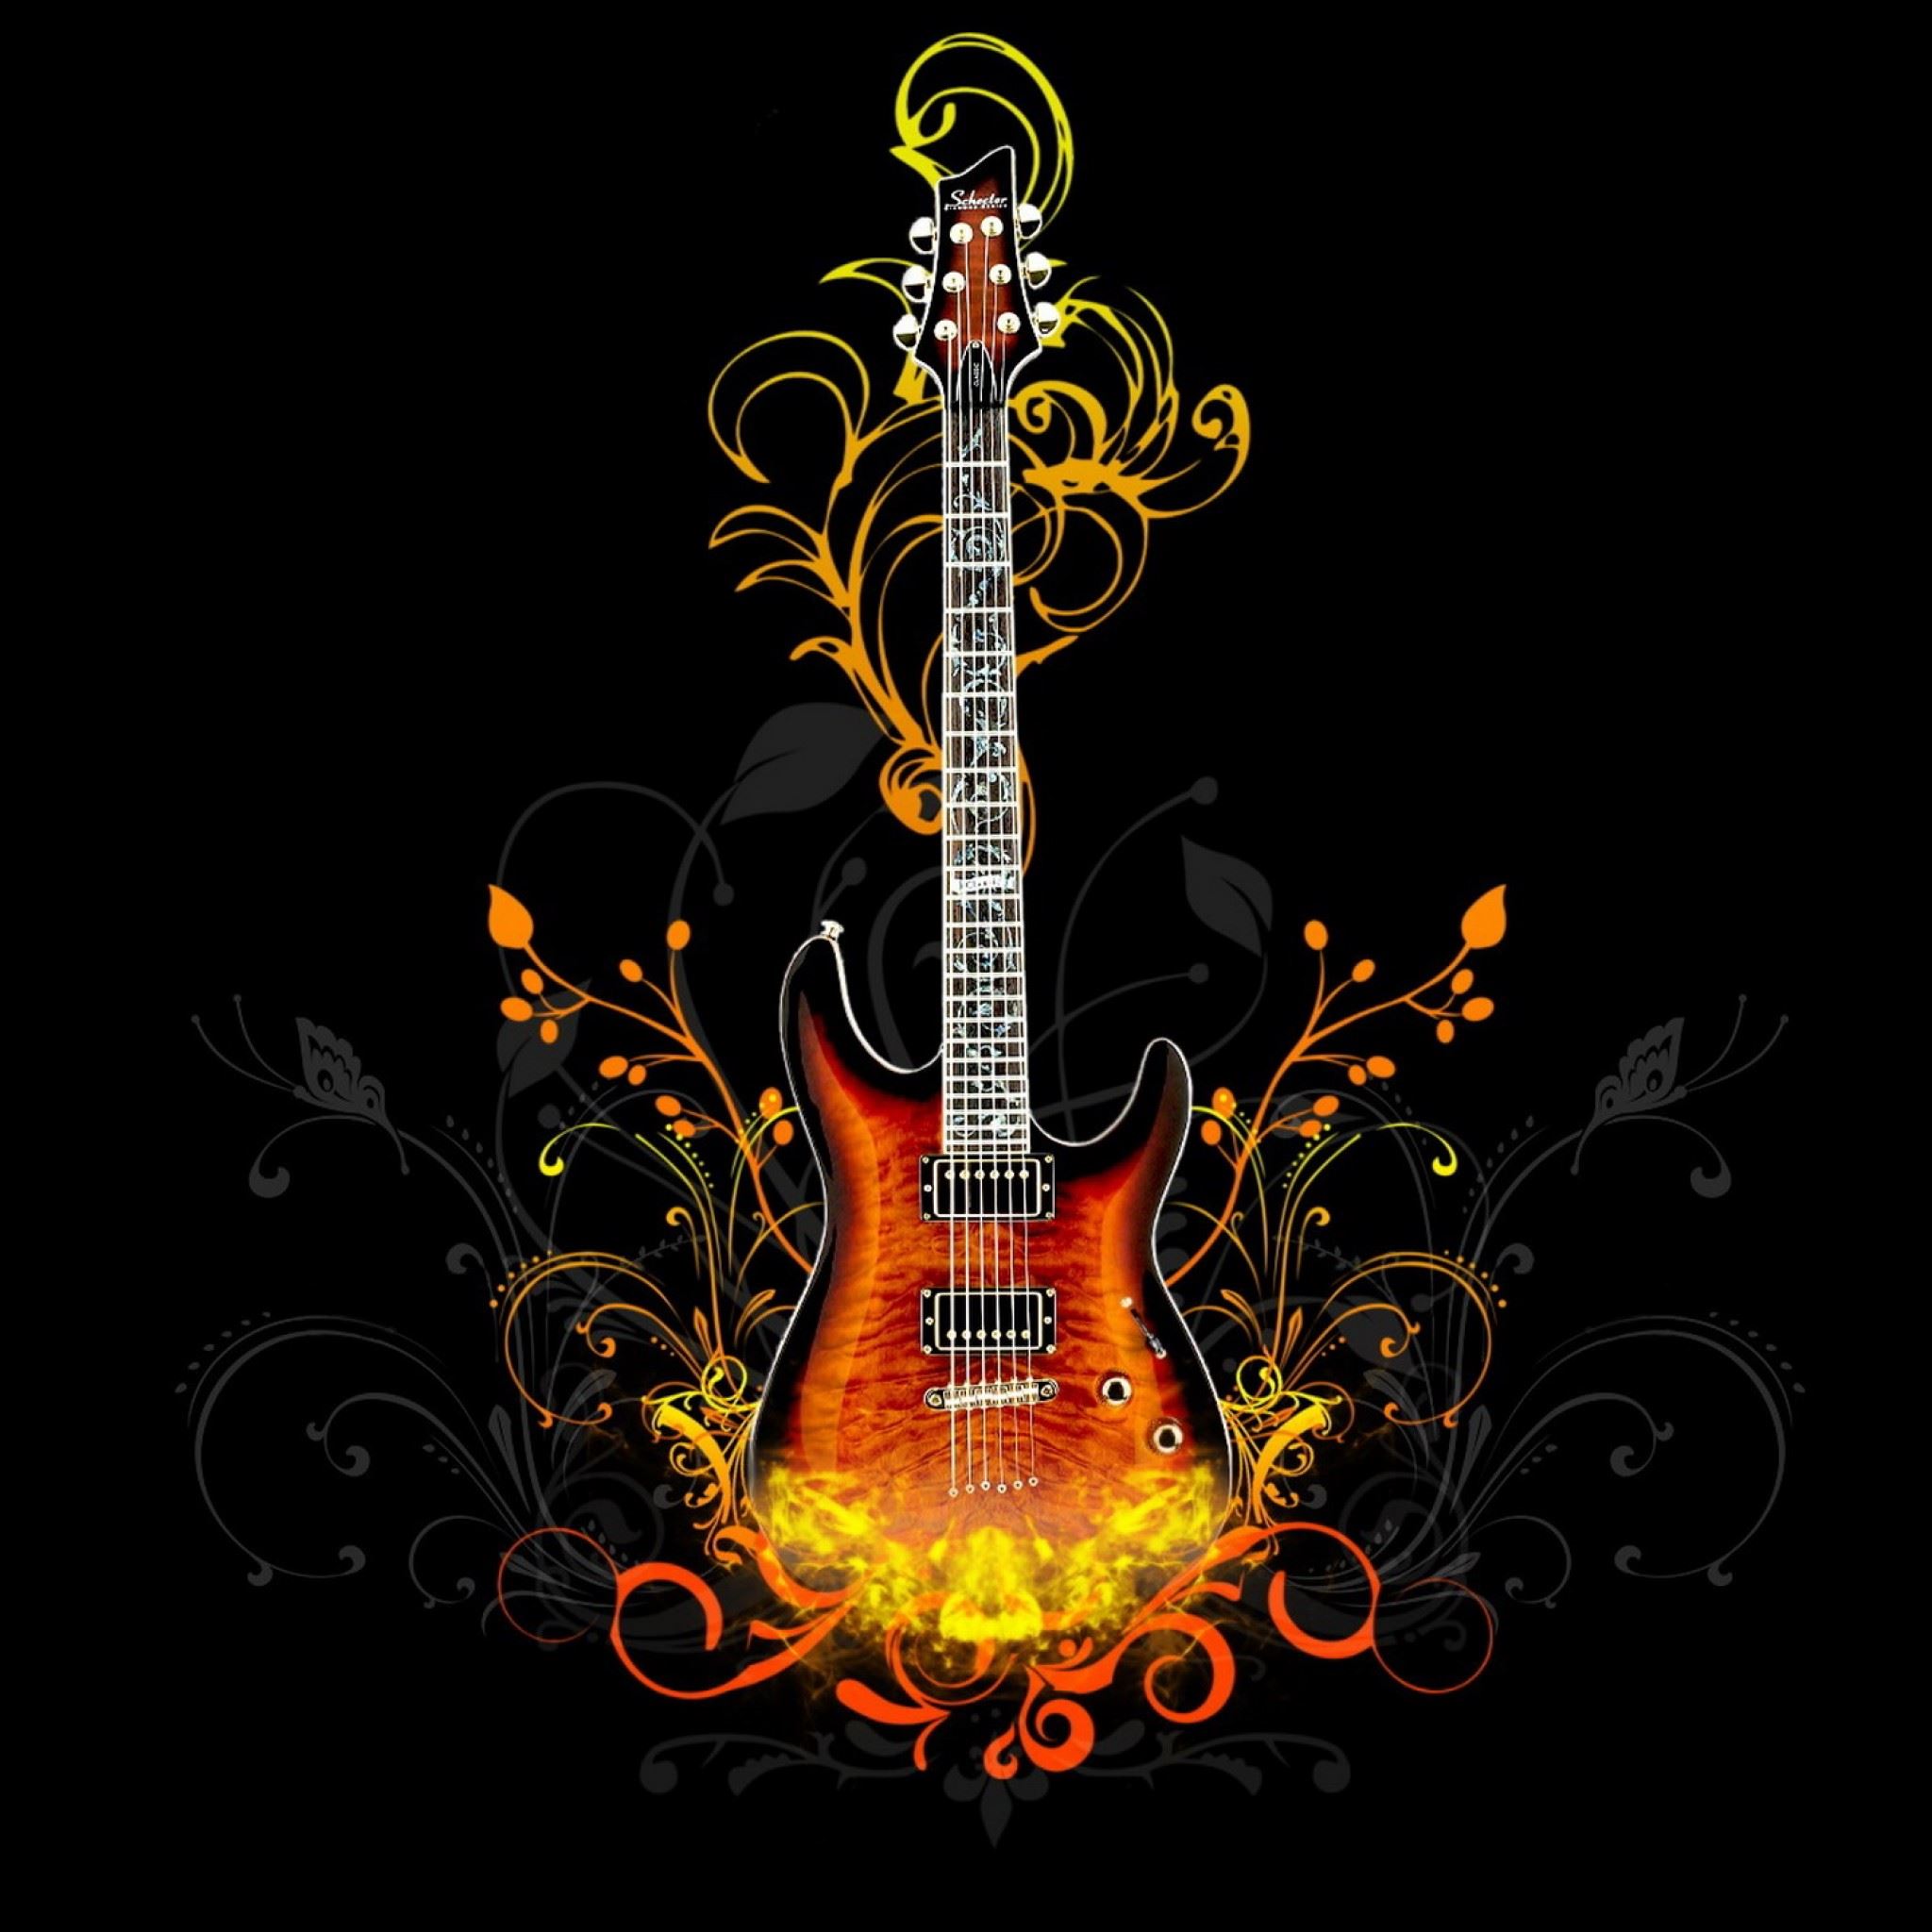 Guitar Abstract iPad Air wallpaper 